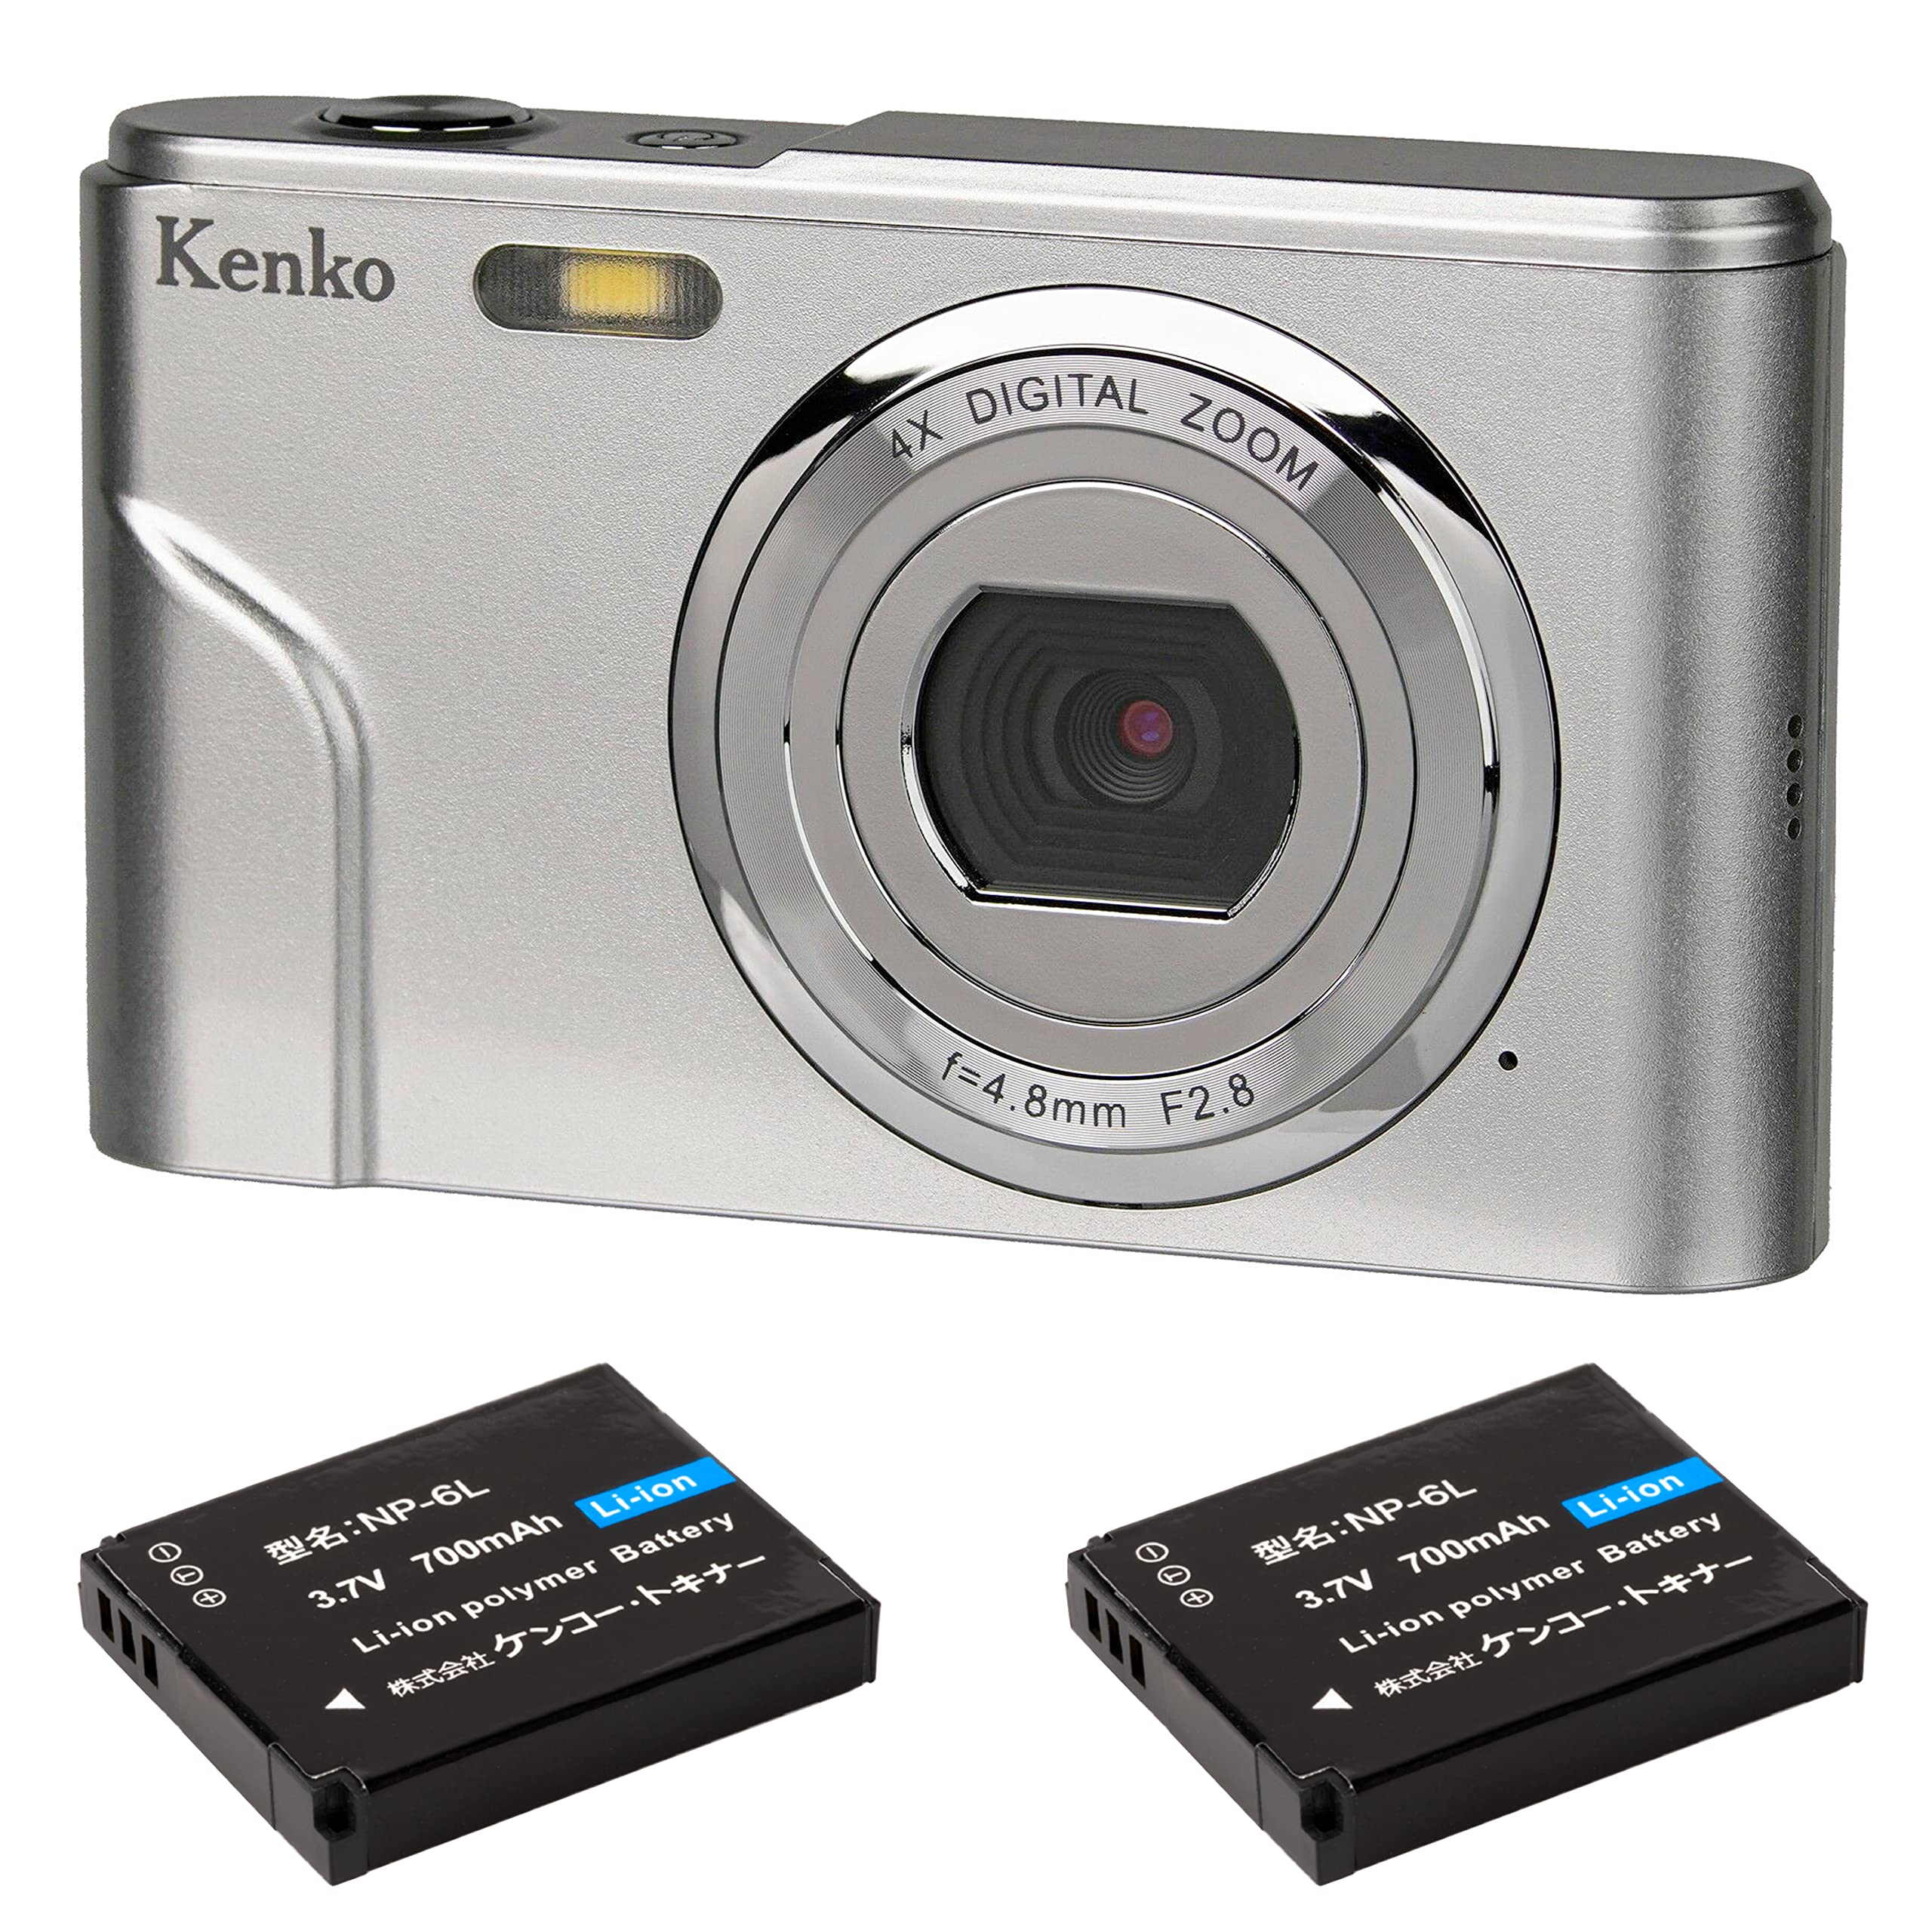 ケンコー Kenko コンパクトデジタルカメラ KC-03TYST バッテリー2個セット 有効画素数800万画素 デジタルズーム4倍 1080p動画撮影 144091